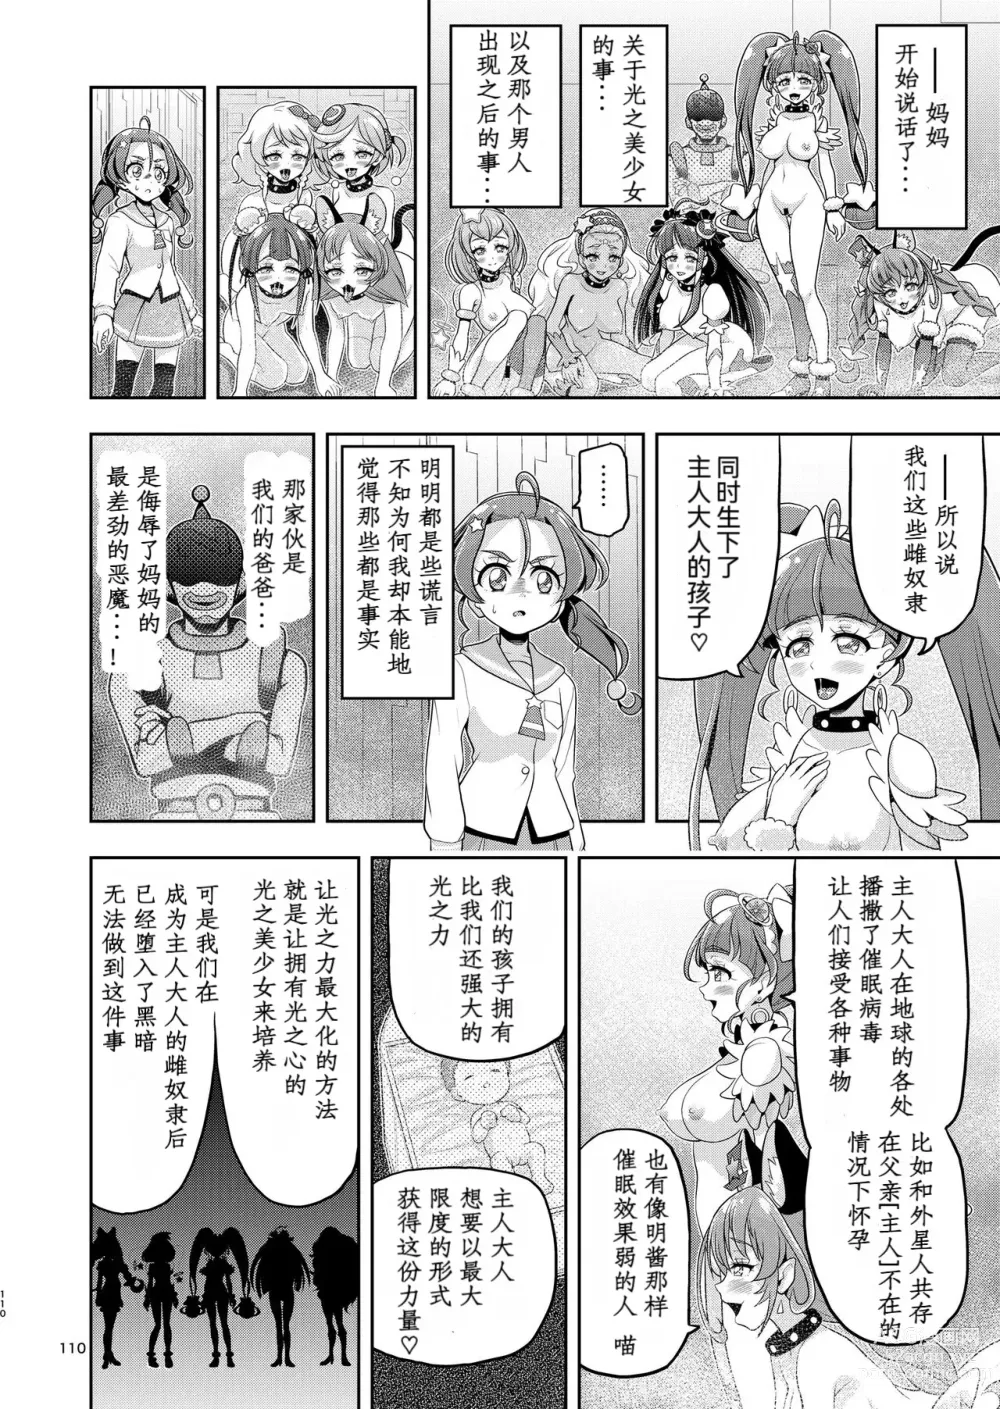 Page 59 of doujinshi Hoshi Asobi 2